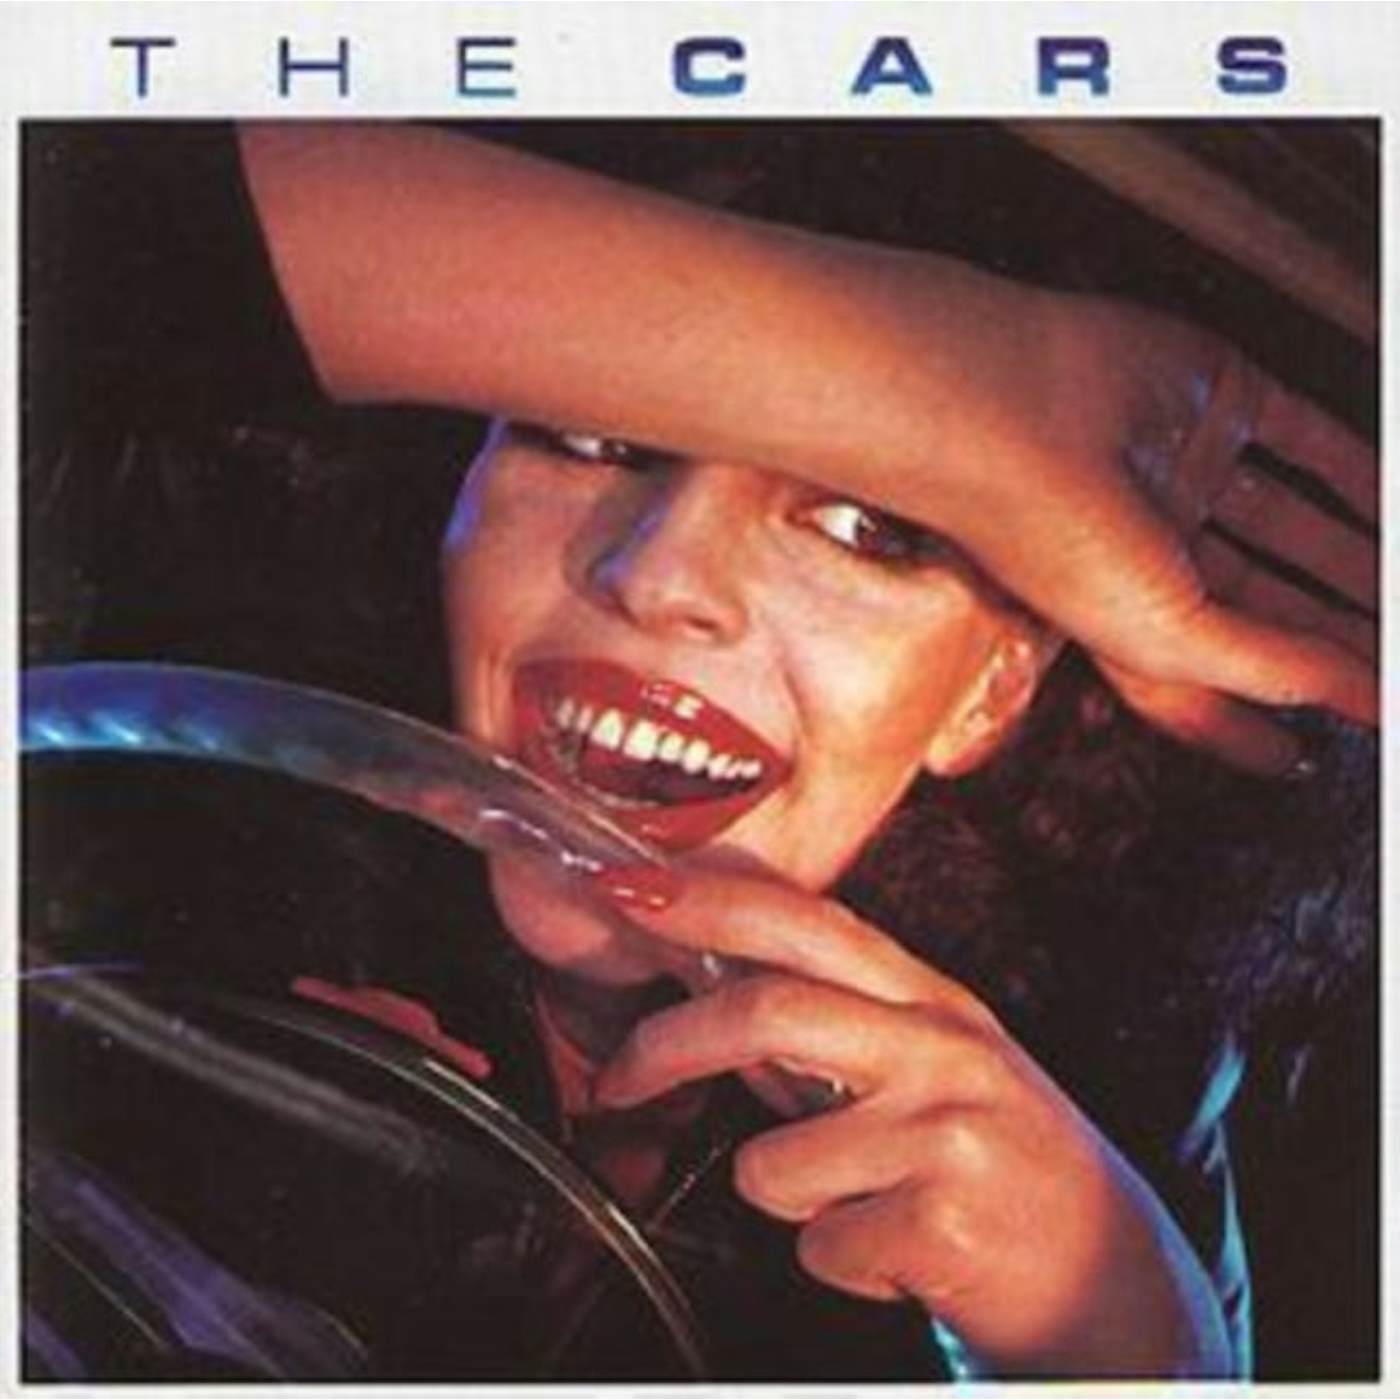 Cars CD - The Cars